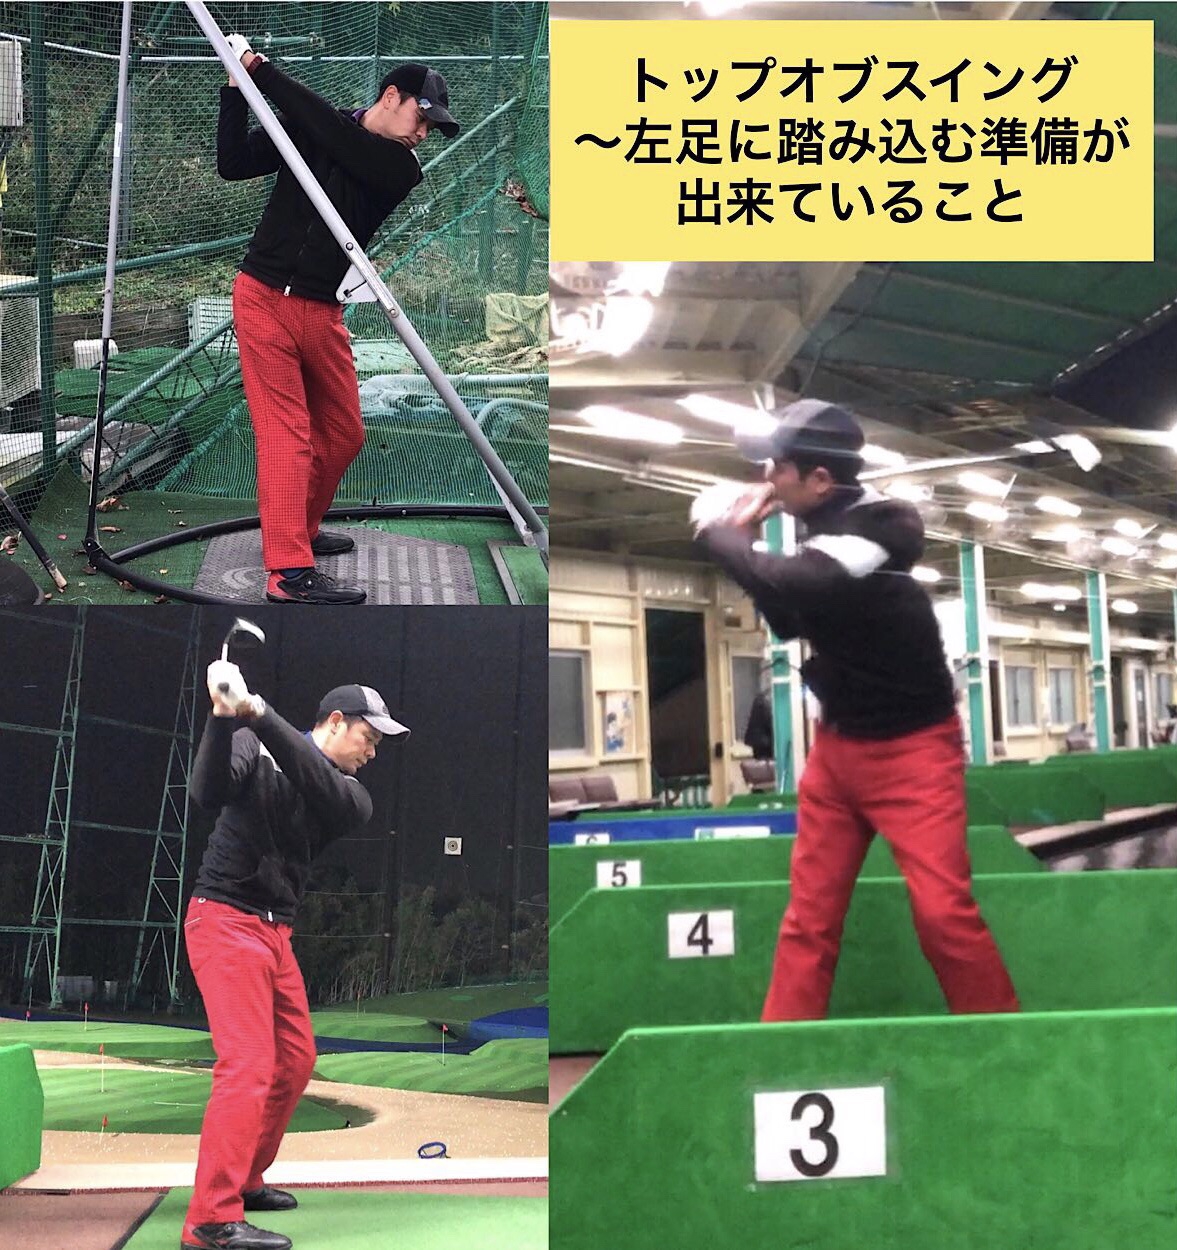 8つのスイング名称 と各ポイント トップオブスイング Naokiゴルフ塾 大阪 堺市のゴルフスクール